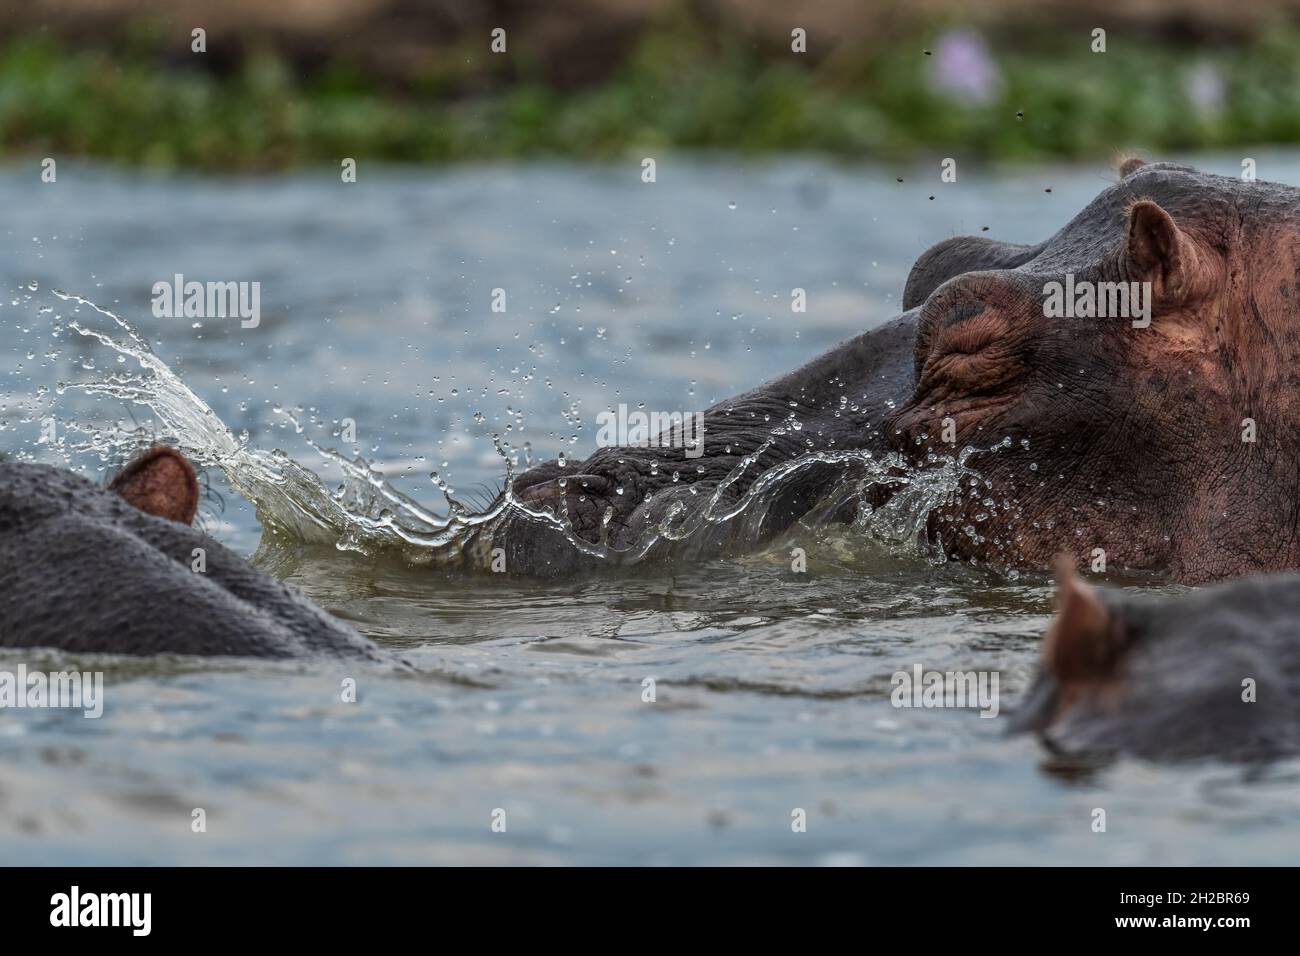 Hippopotamus - Hippopotamus amphibius, beliebtes Großsäugetier aus afrikanischen Flüssen und Seen, Queen Elizabeth National Park, Uganda. Stockfoto